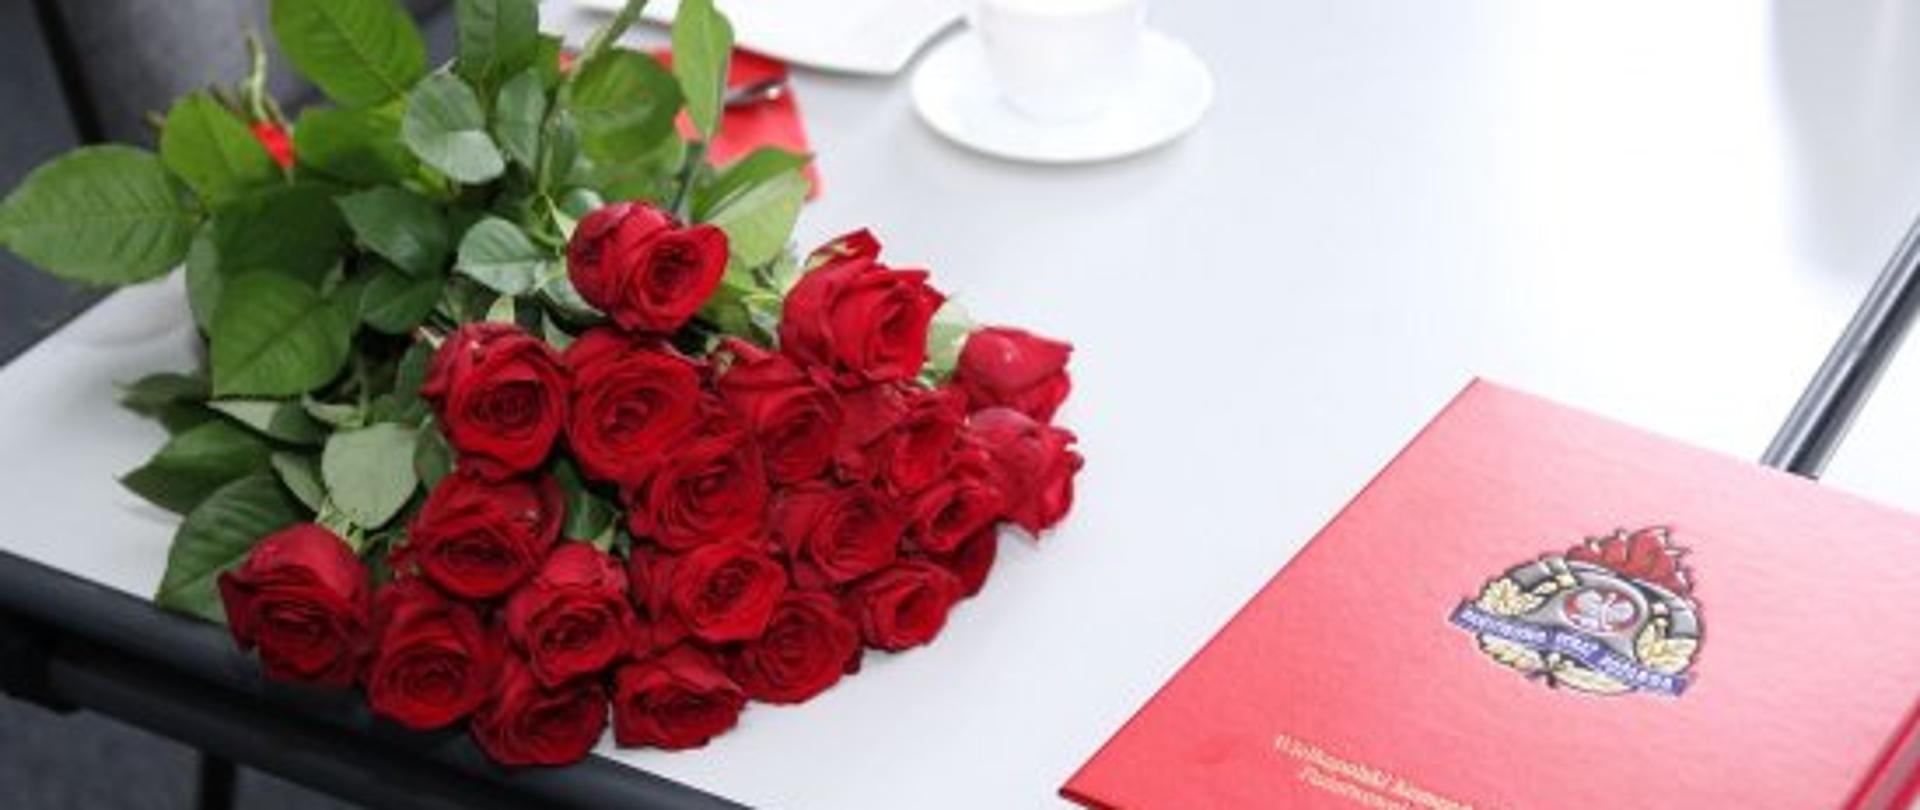 na zdjęciu widoczny jest duży bukiet z czerwonych róż leżący na szarym stole obok czerwonej teczki z logo państwowej straży pożarnej oraz białej filiżanki do kawy